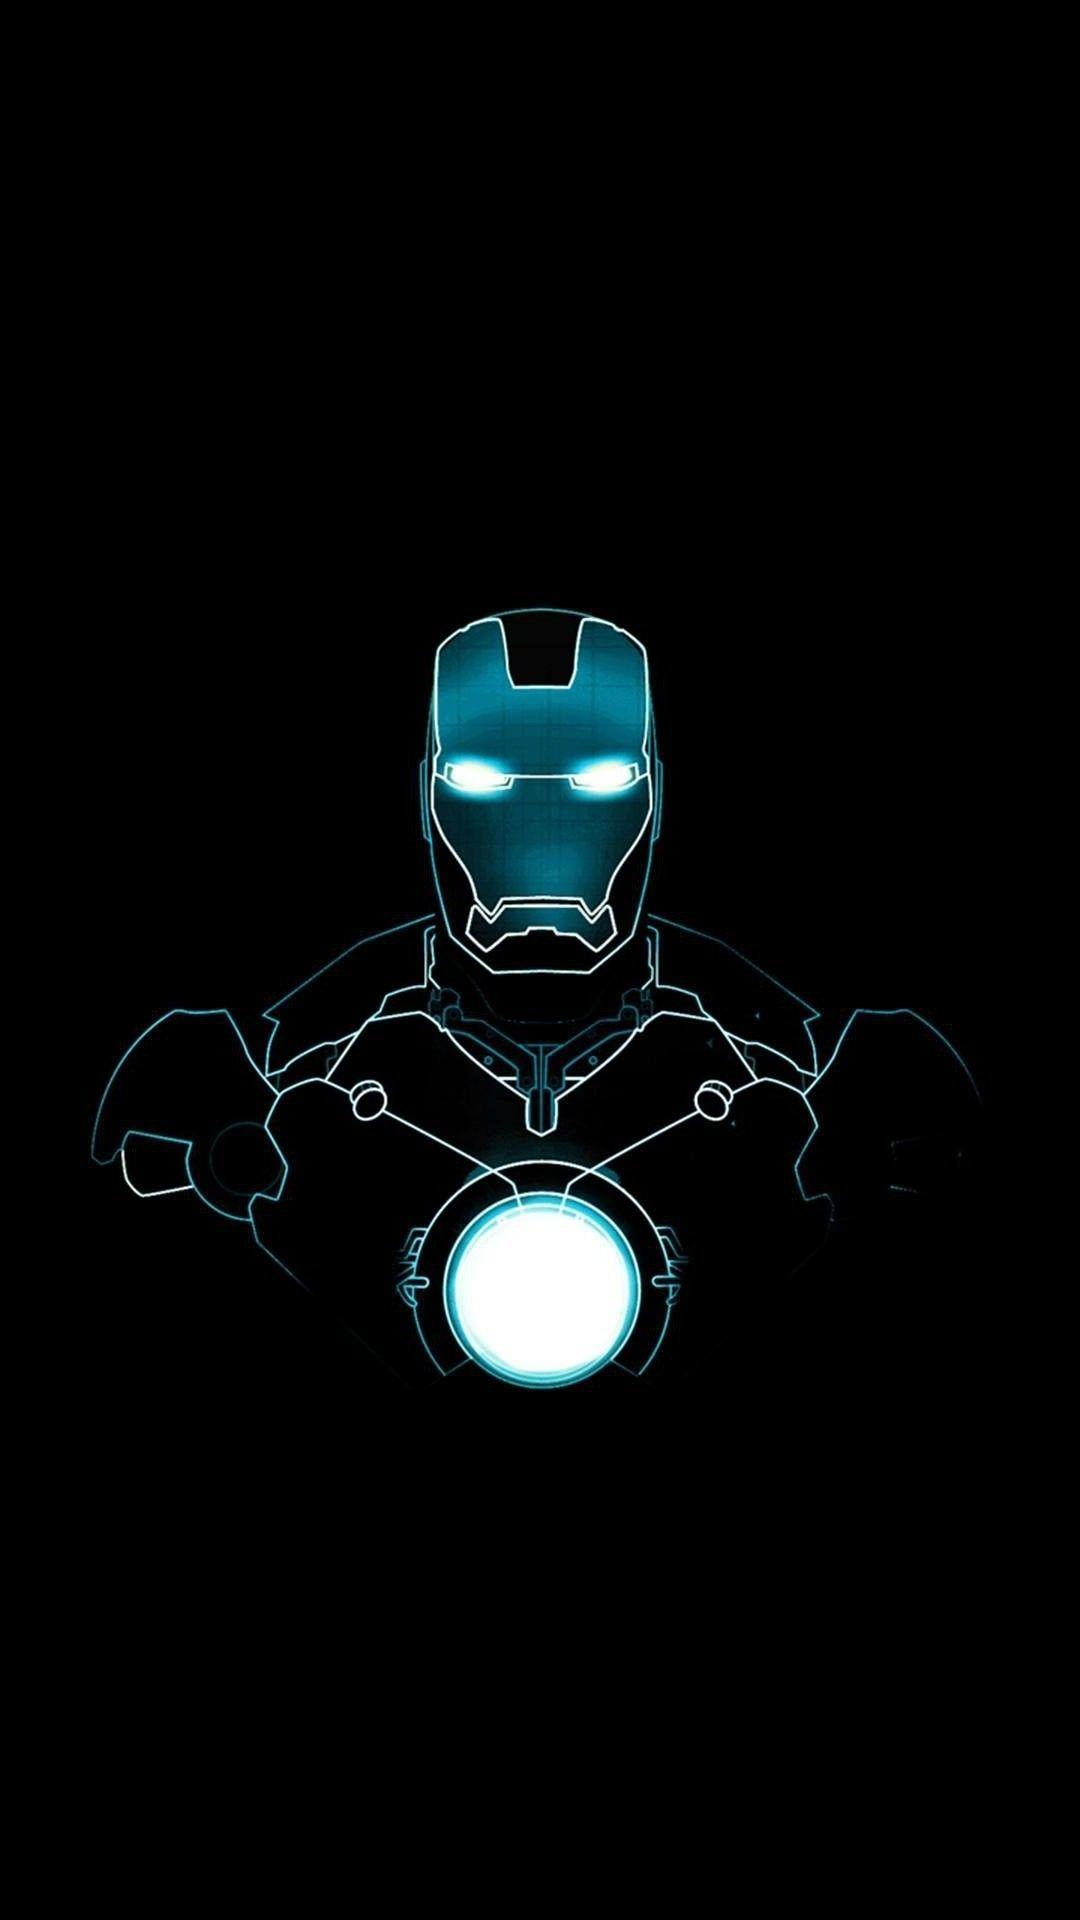 Avengers Endgame Iron Man SpiderMan 8K Wallpaper 118